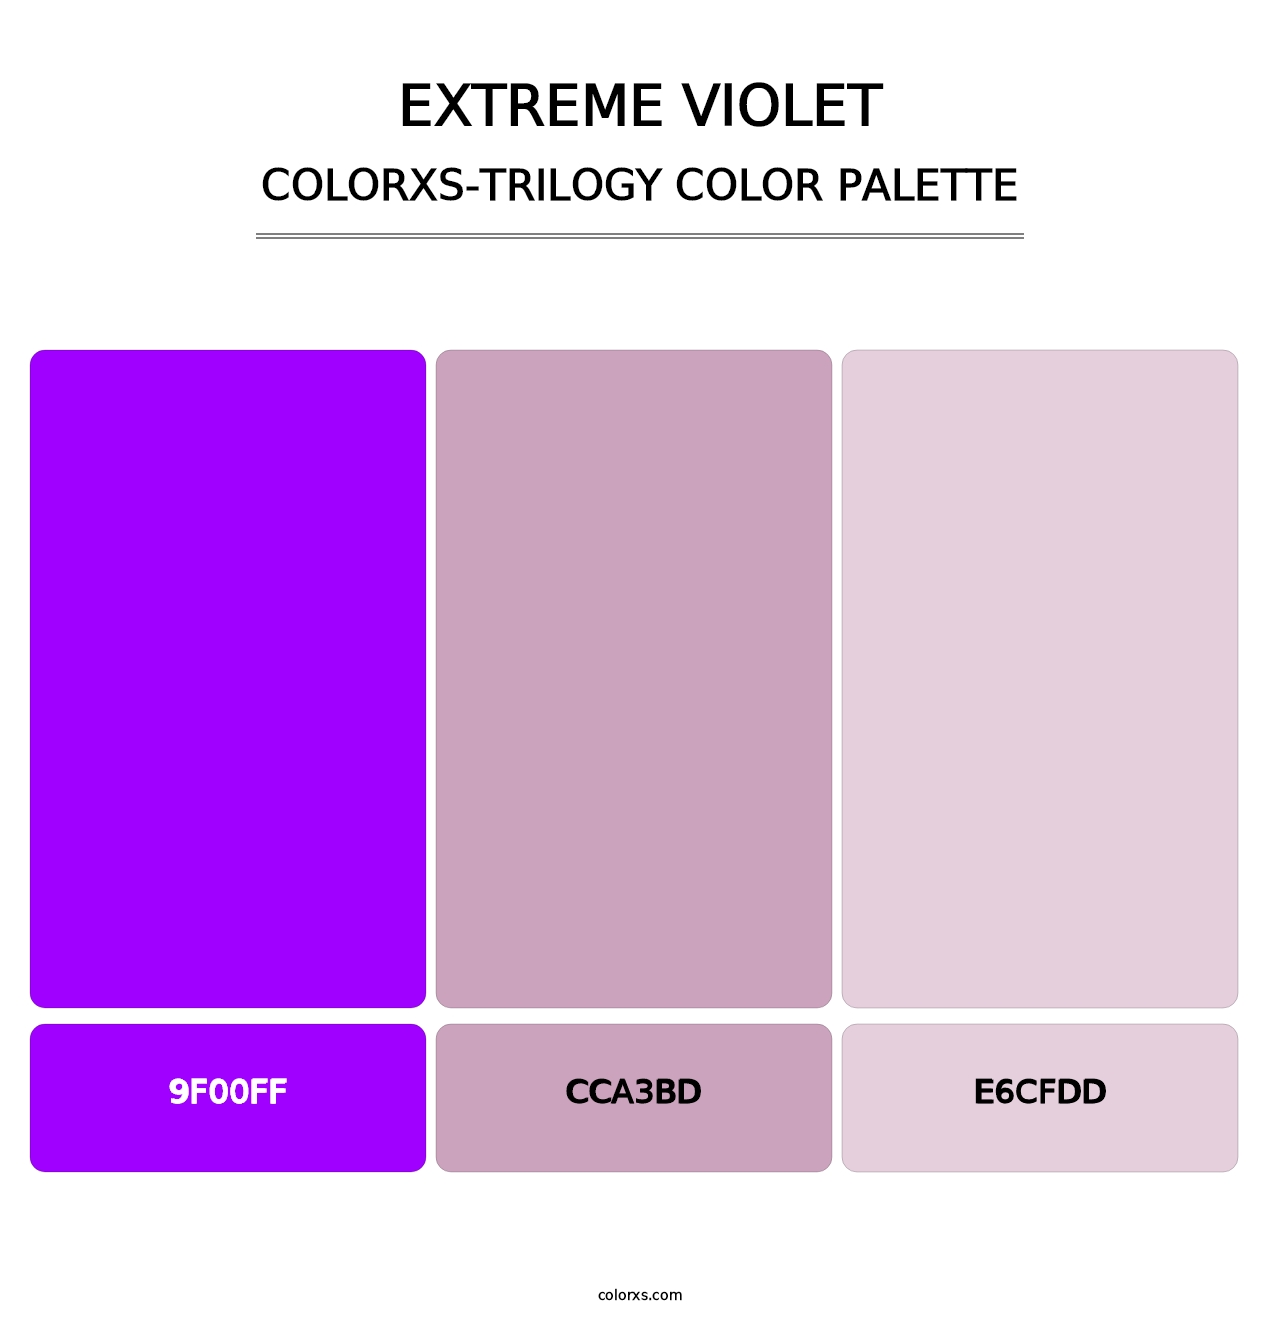 Extreme Violet - Colorxs Trilogy Palette